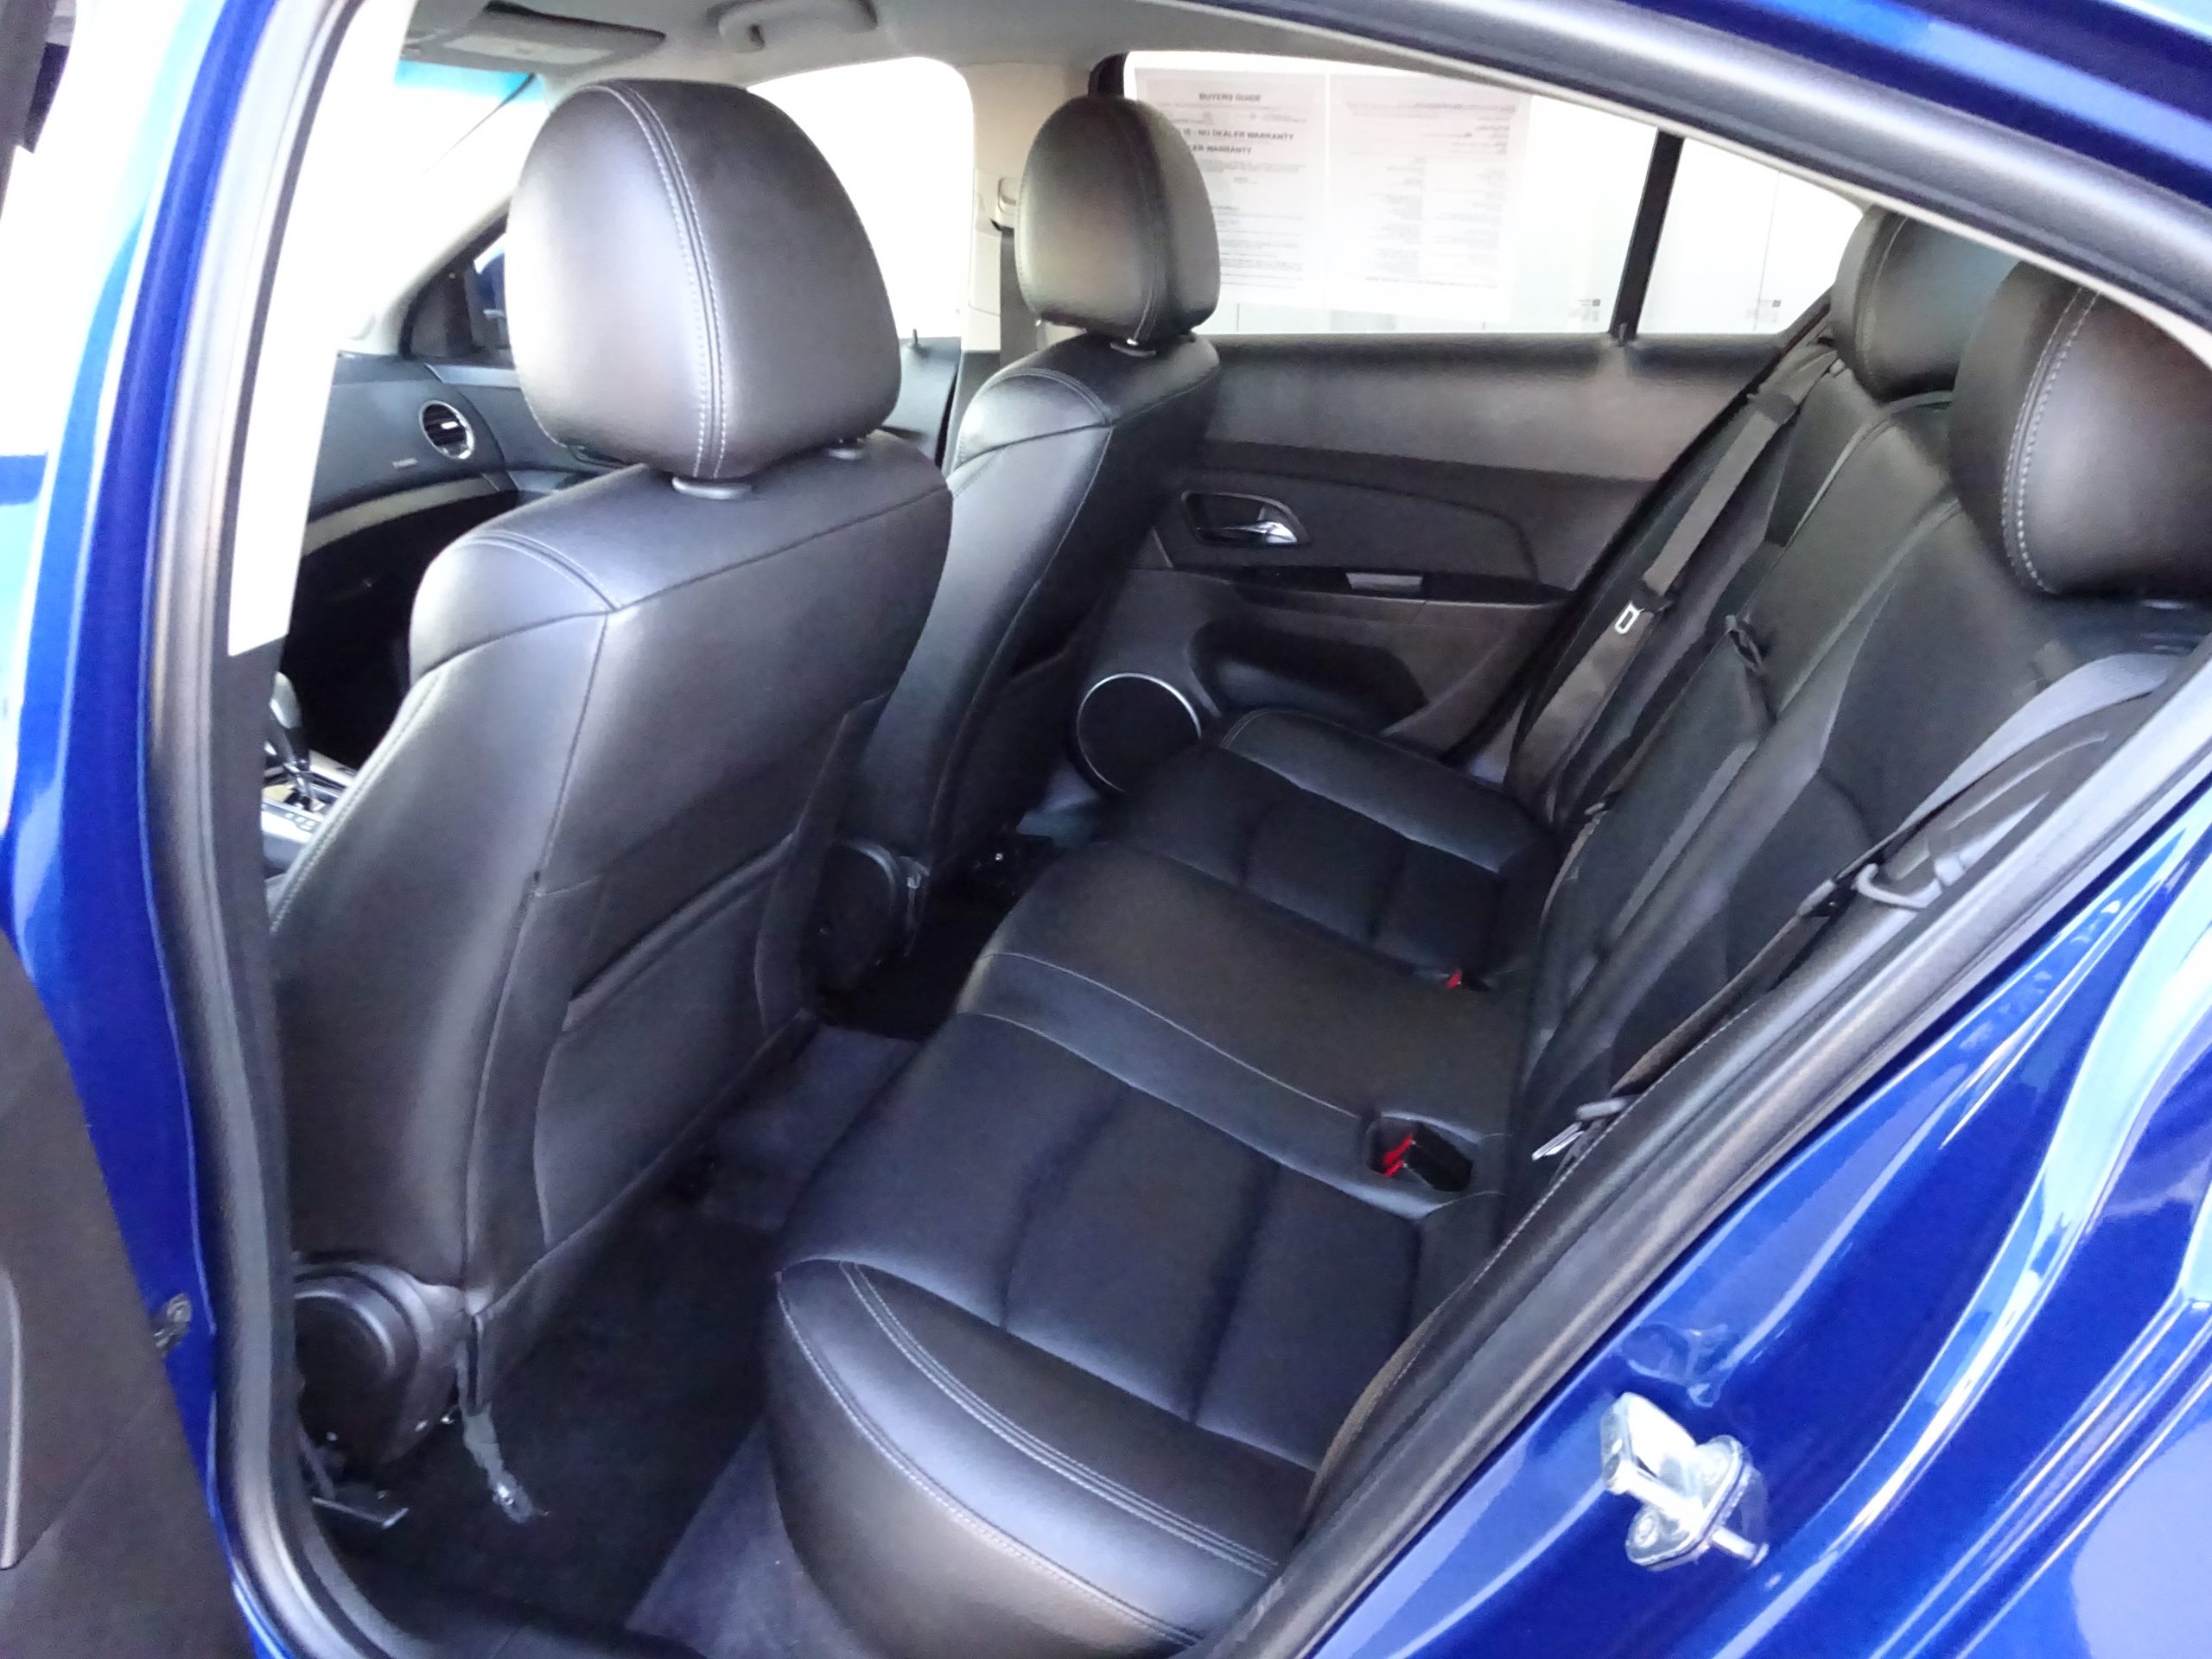 Used 2012 Chevrolet Cruze LTZ Sedan for sale in 